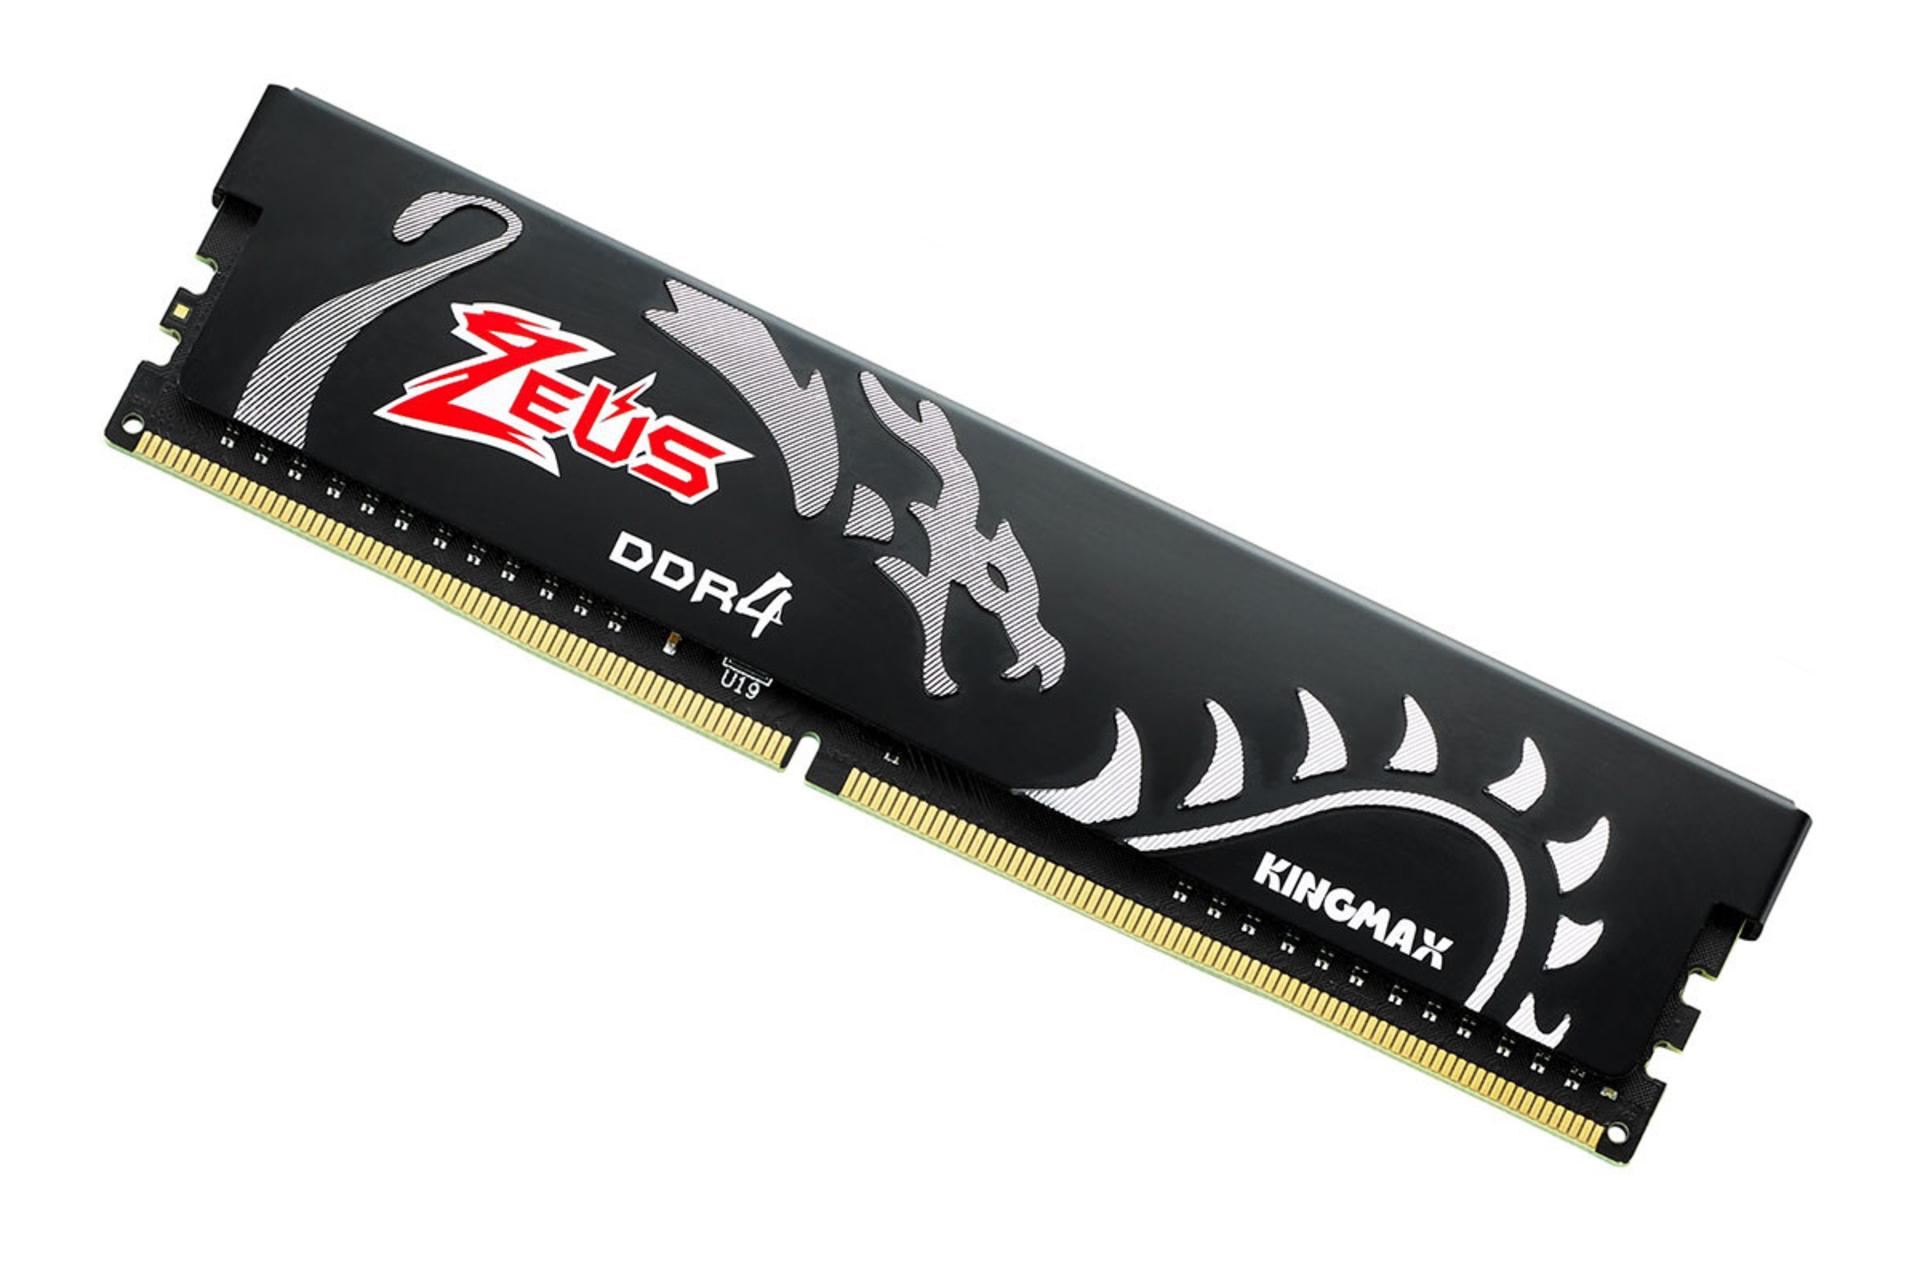 نمای کنار رم کینگ مکس Zeus Dragon ظرفیت 16 گیگابایت از نوع DDR4-3000